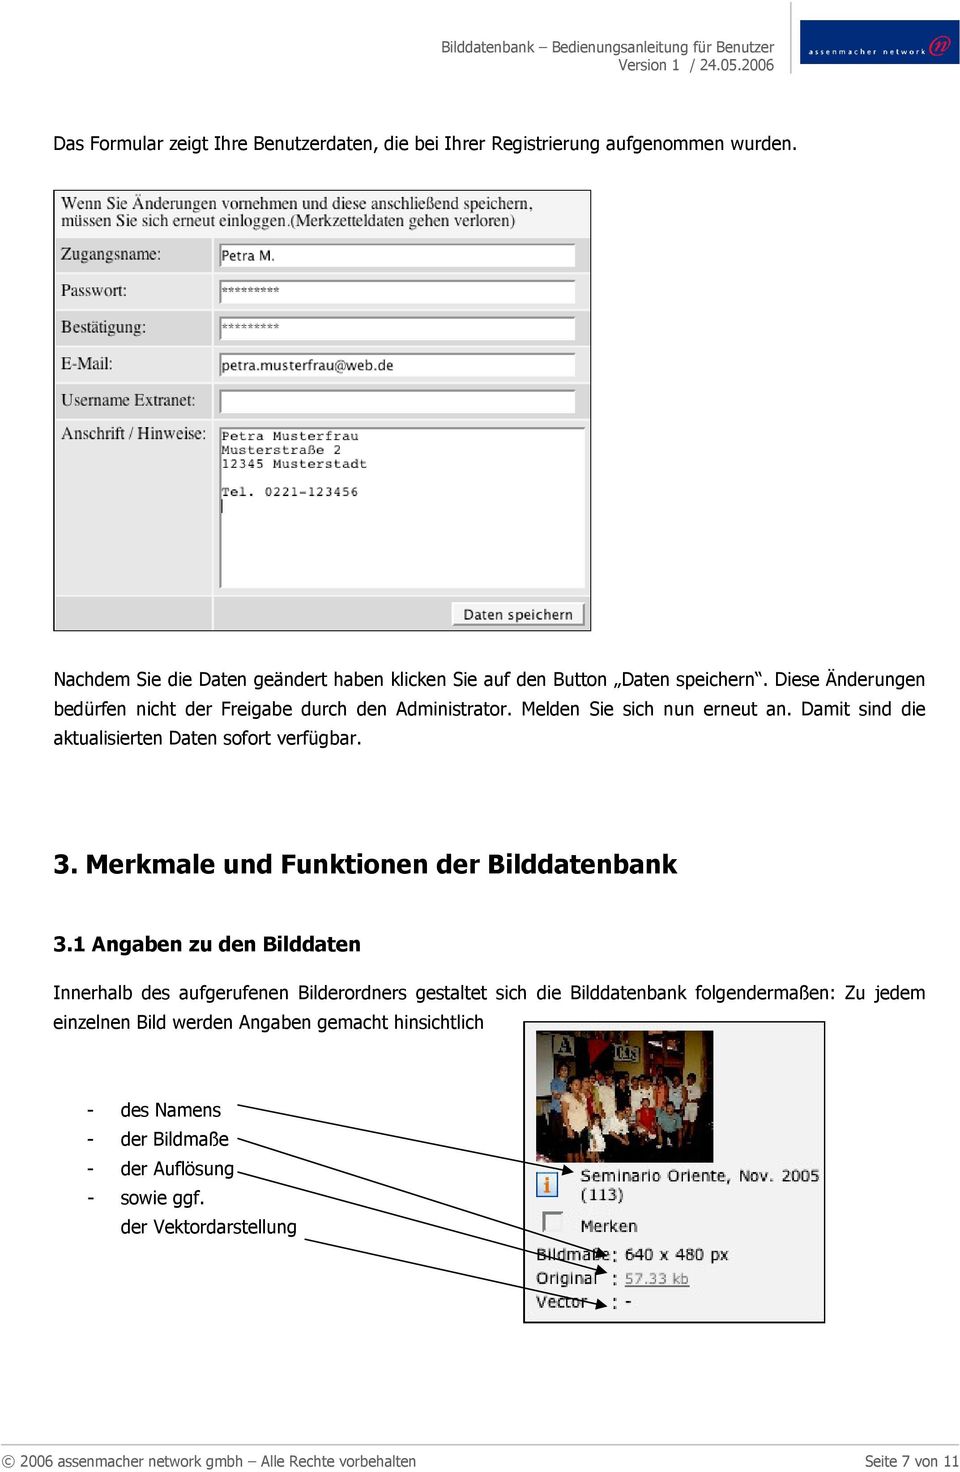 Merkmale und Funktionen der Bilddatenbank 3.